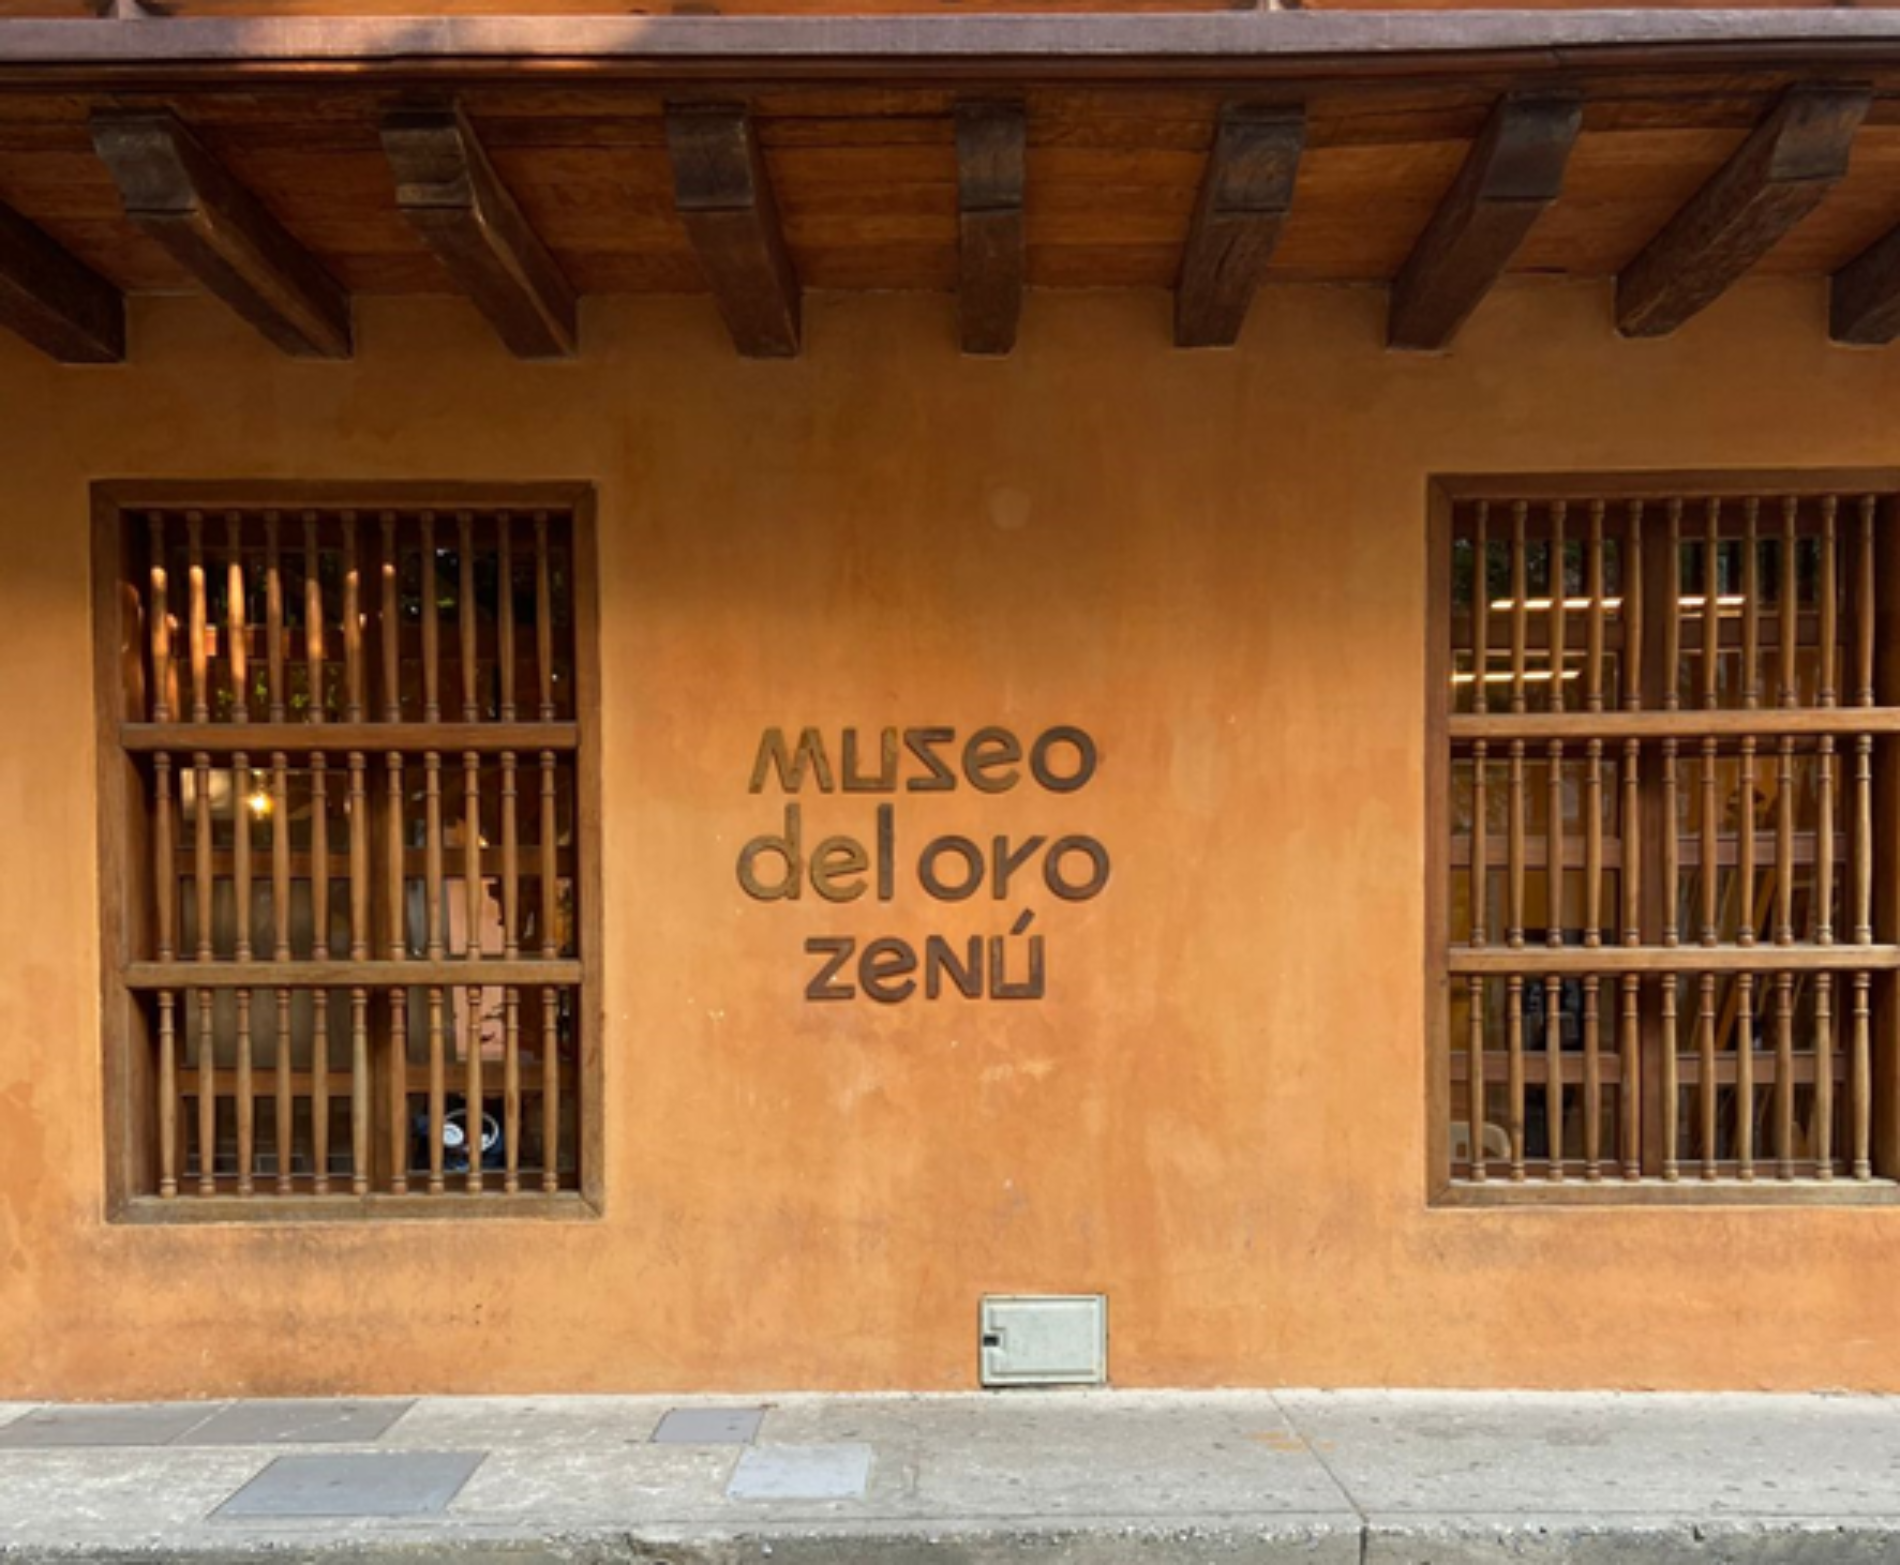 El Museo del Oro Zenú abrirá sus puertas el 18 de febrero